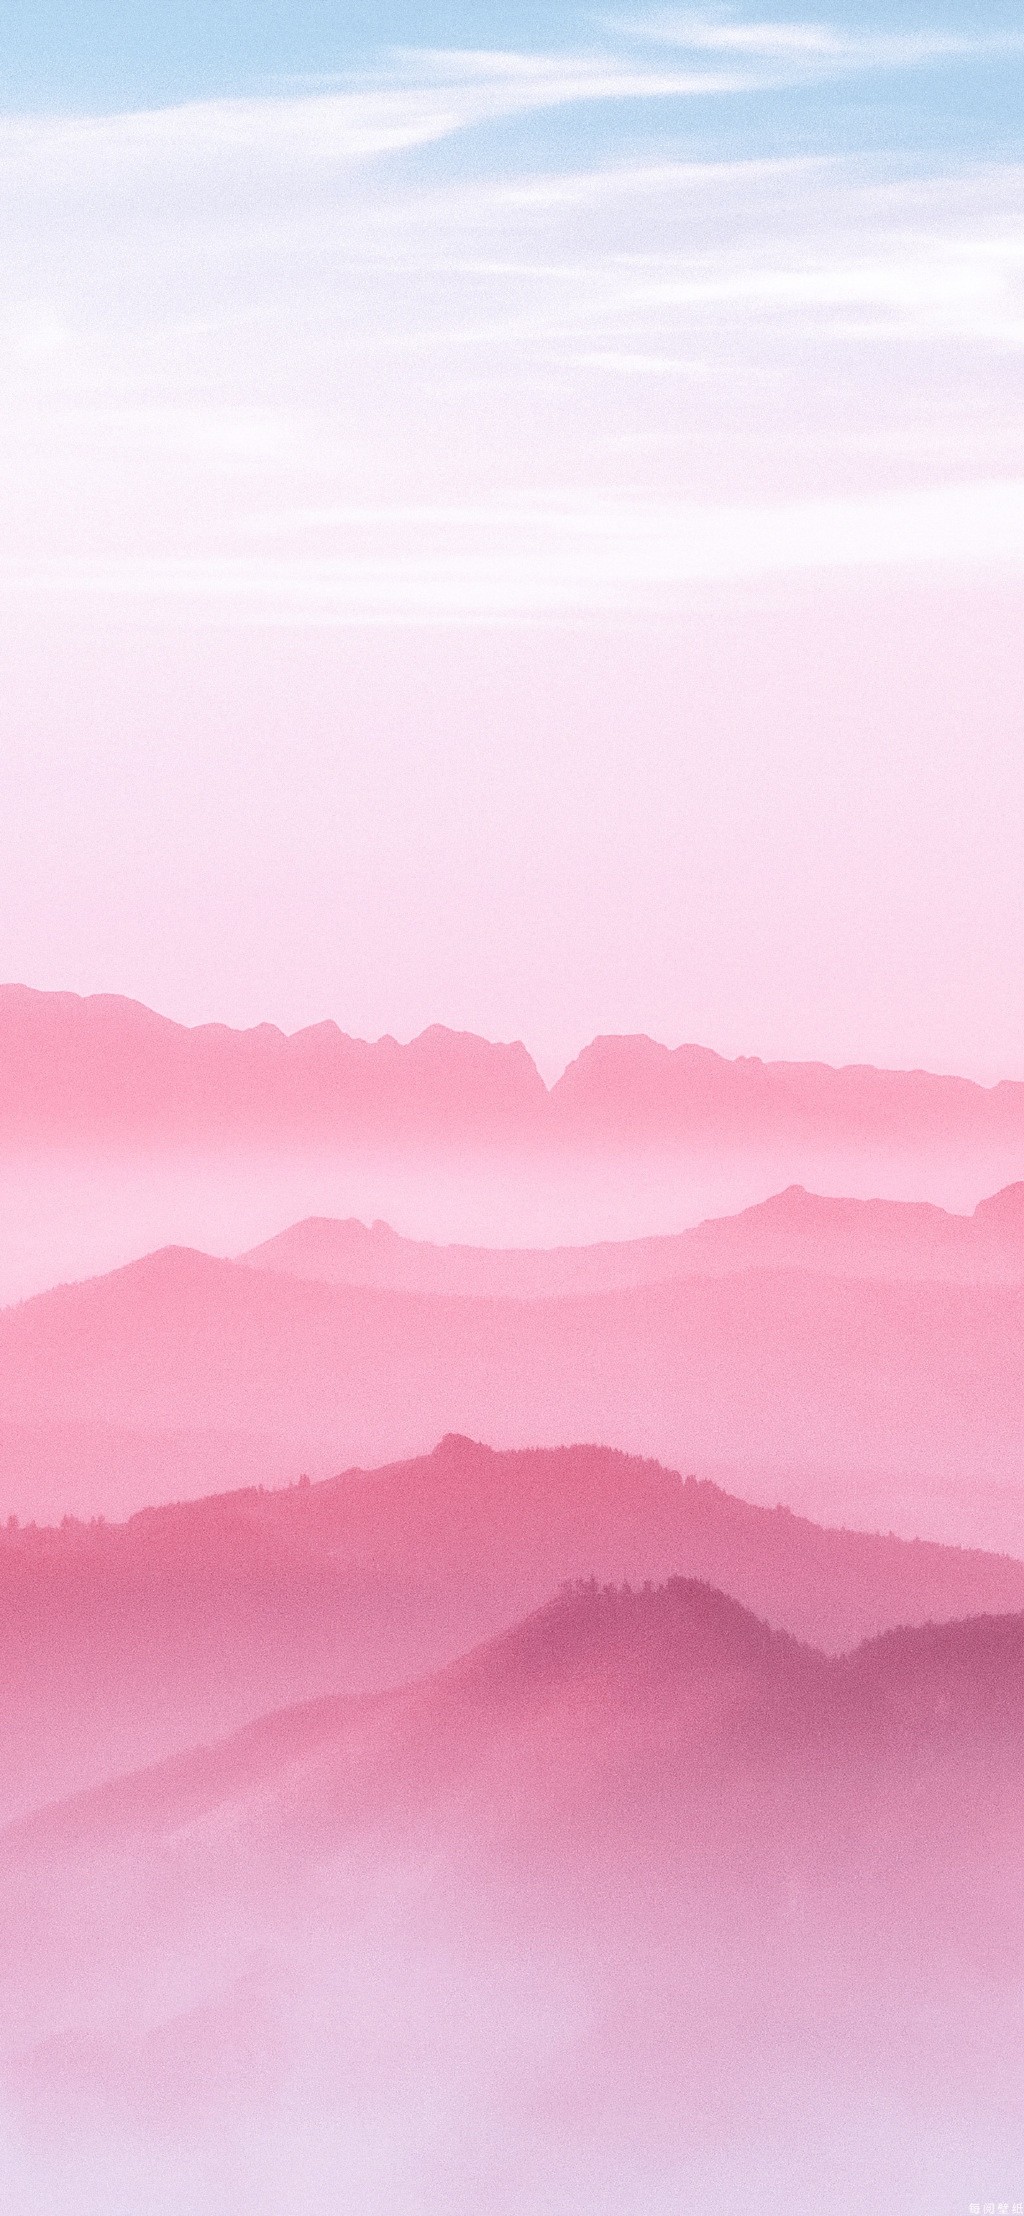 粉色美丽风景手机壁纸